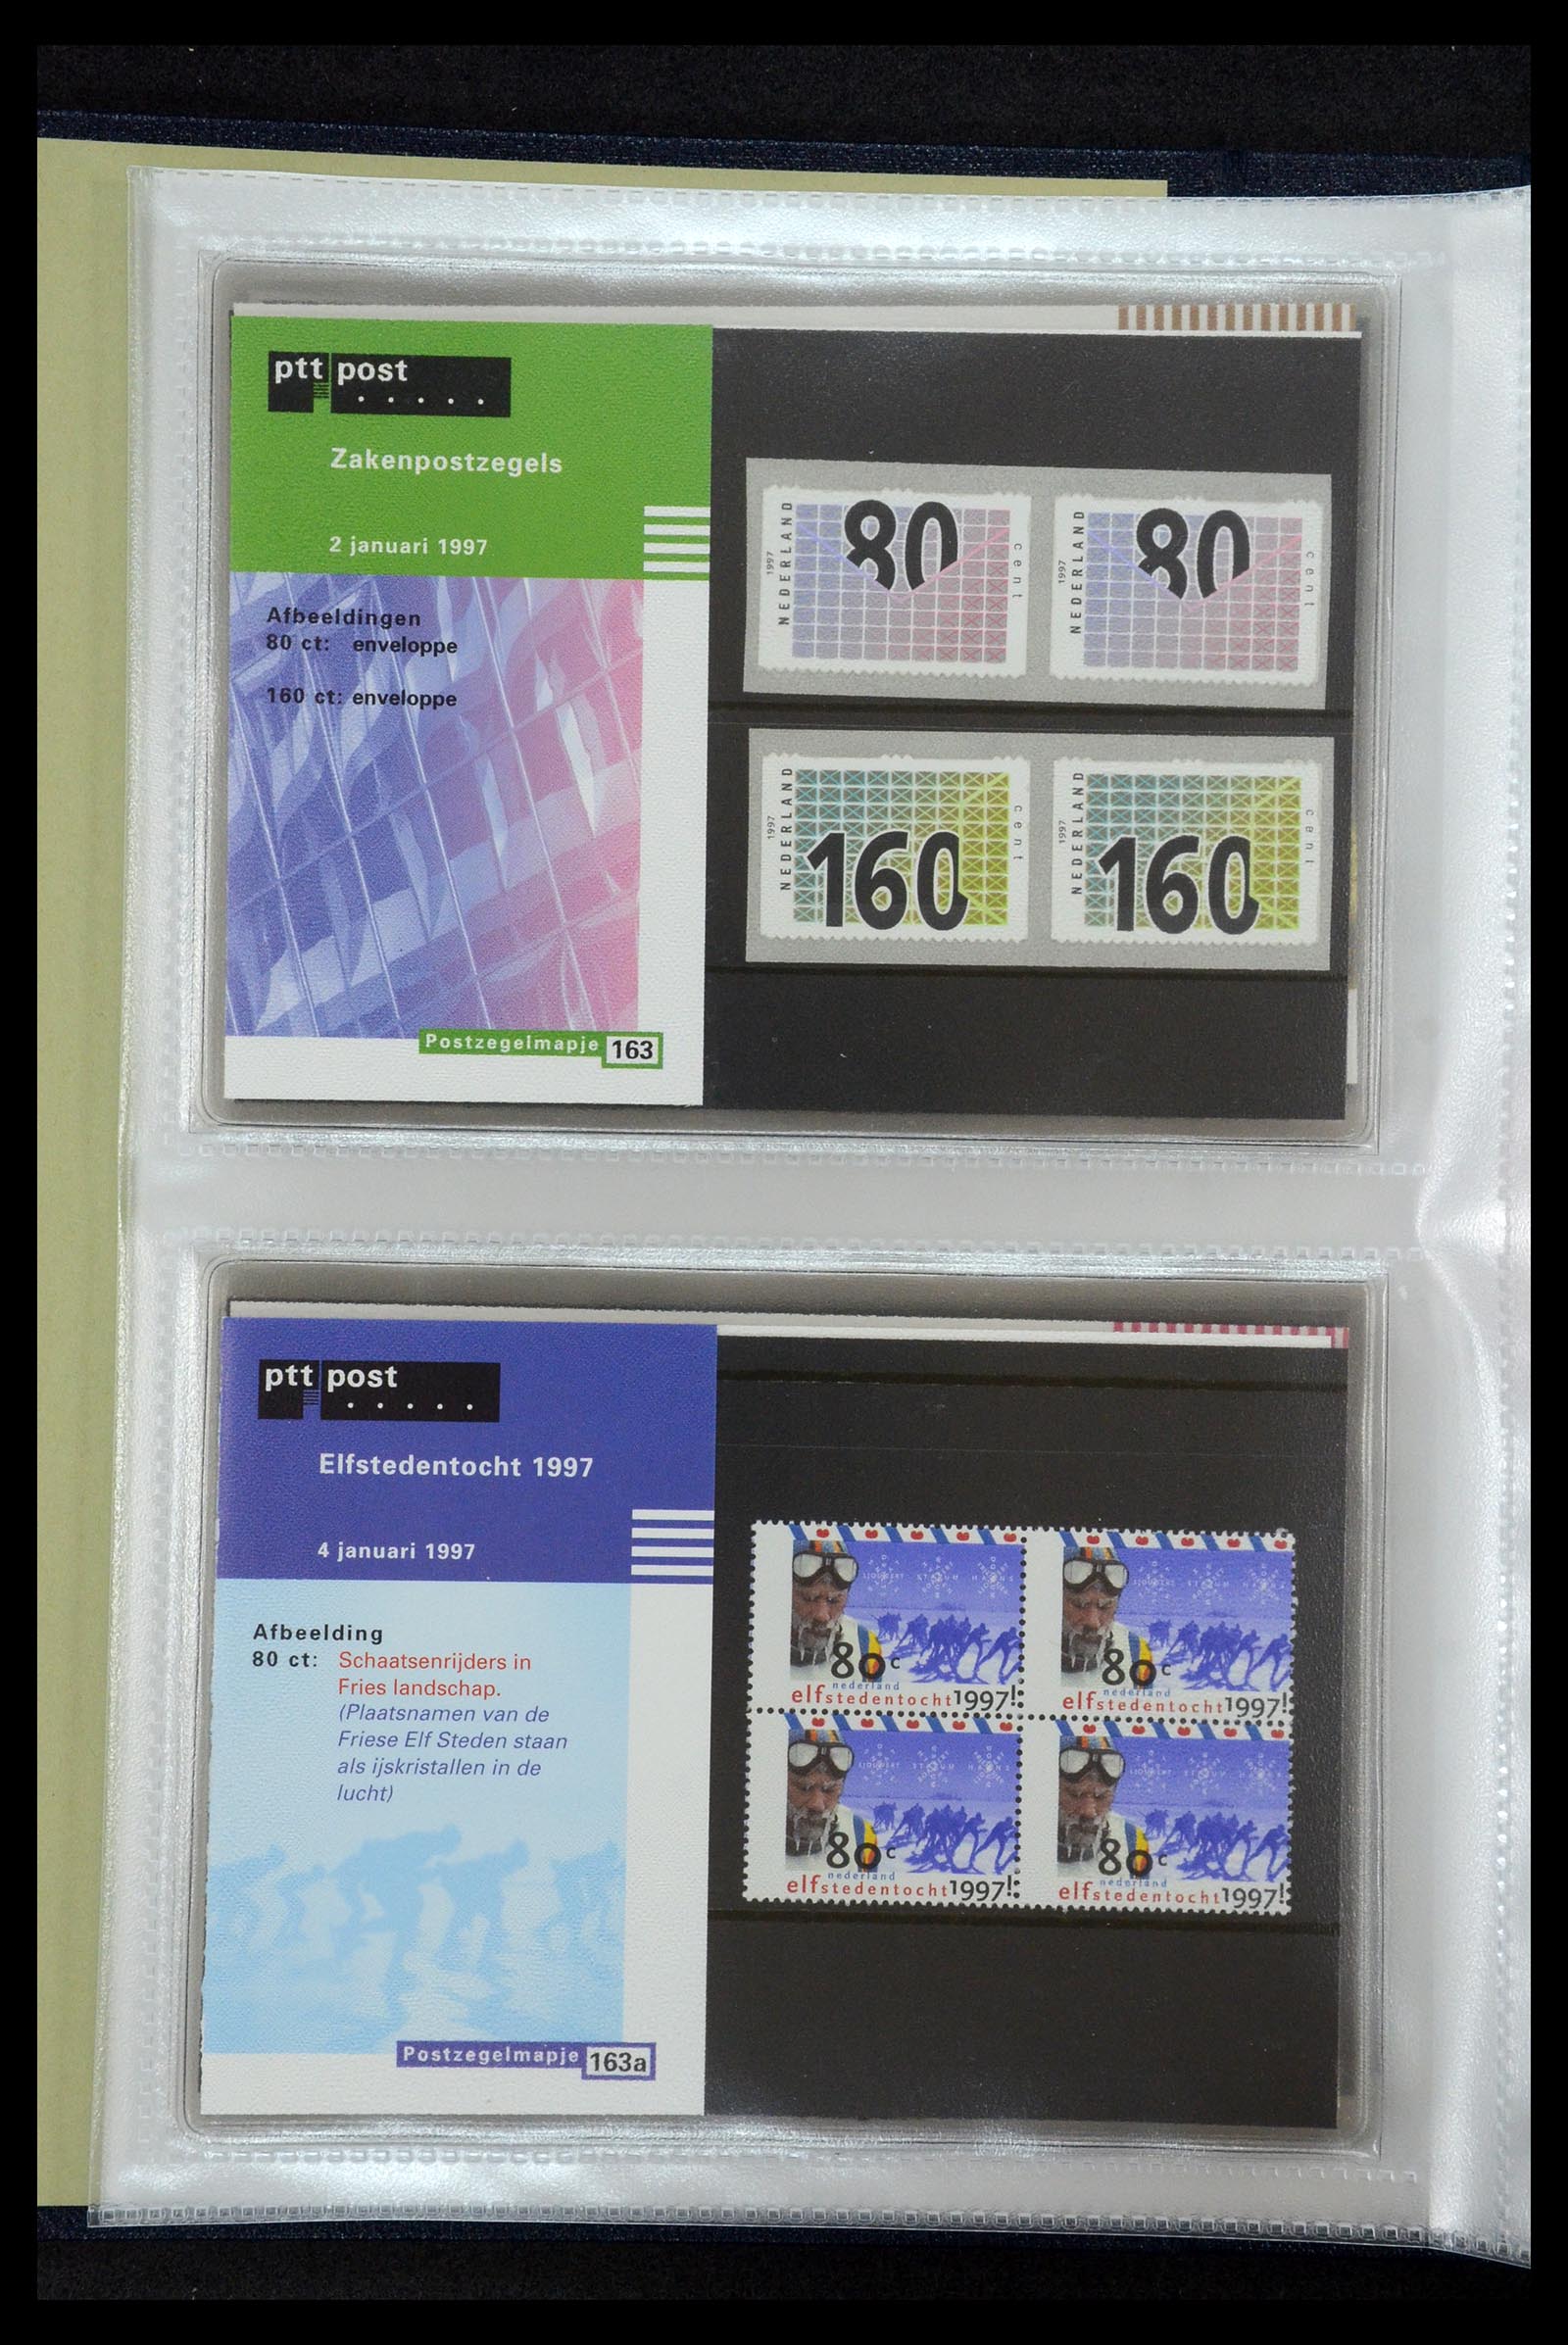 35144 085 - Stamp Collection 35144 Netherlands PTT presentation packs 1982-2021!